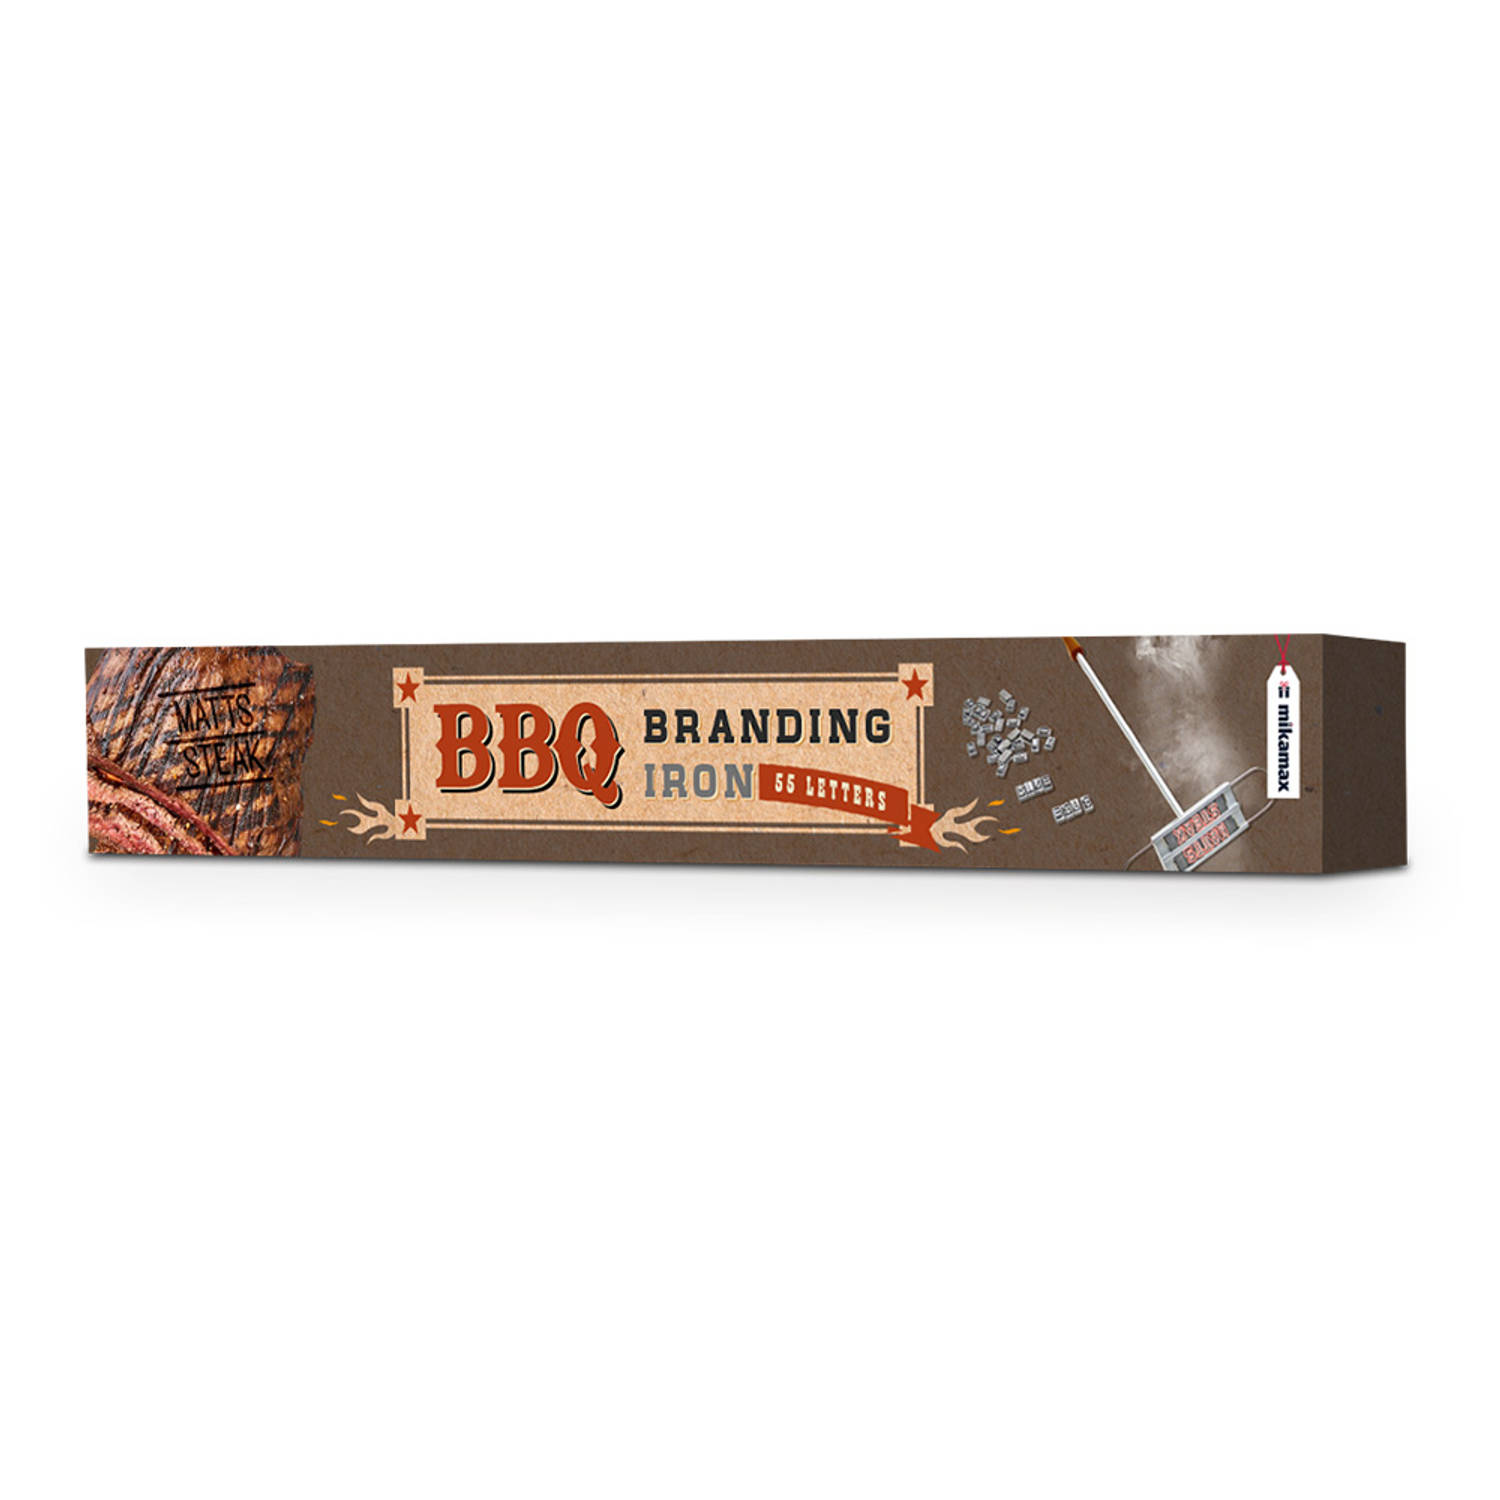 Bbq Branding Iron